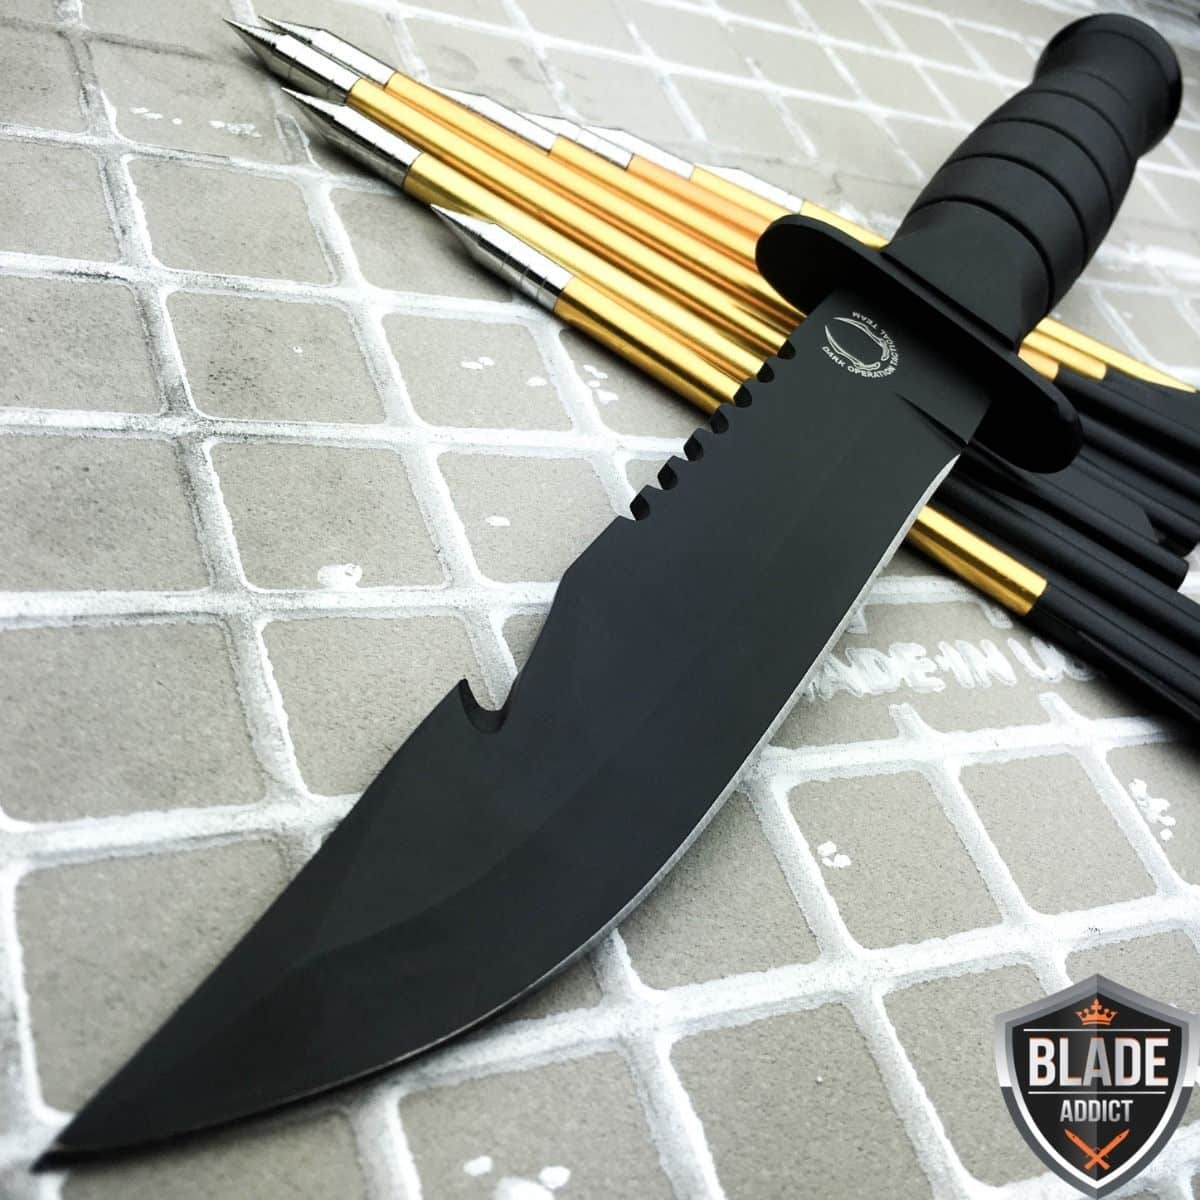 8" Black Tactical Survival Spring Assisted Open Pocket Knife Firestarter Camping